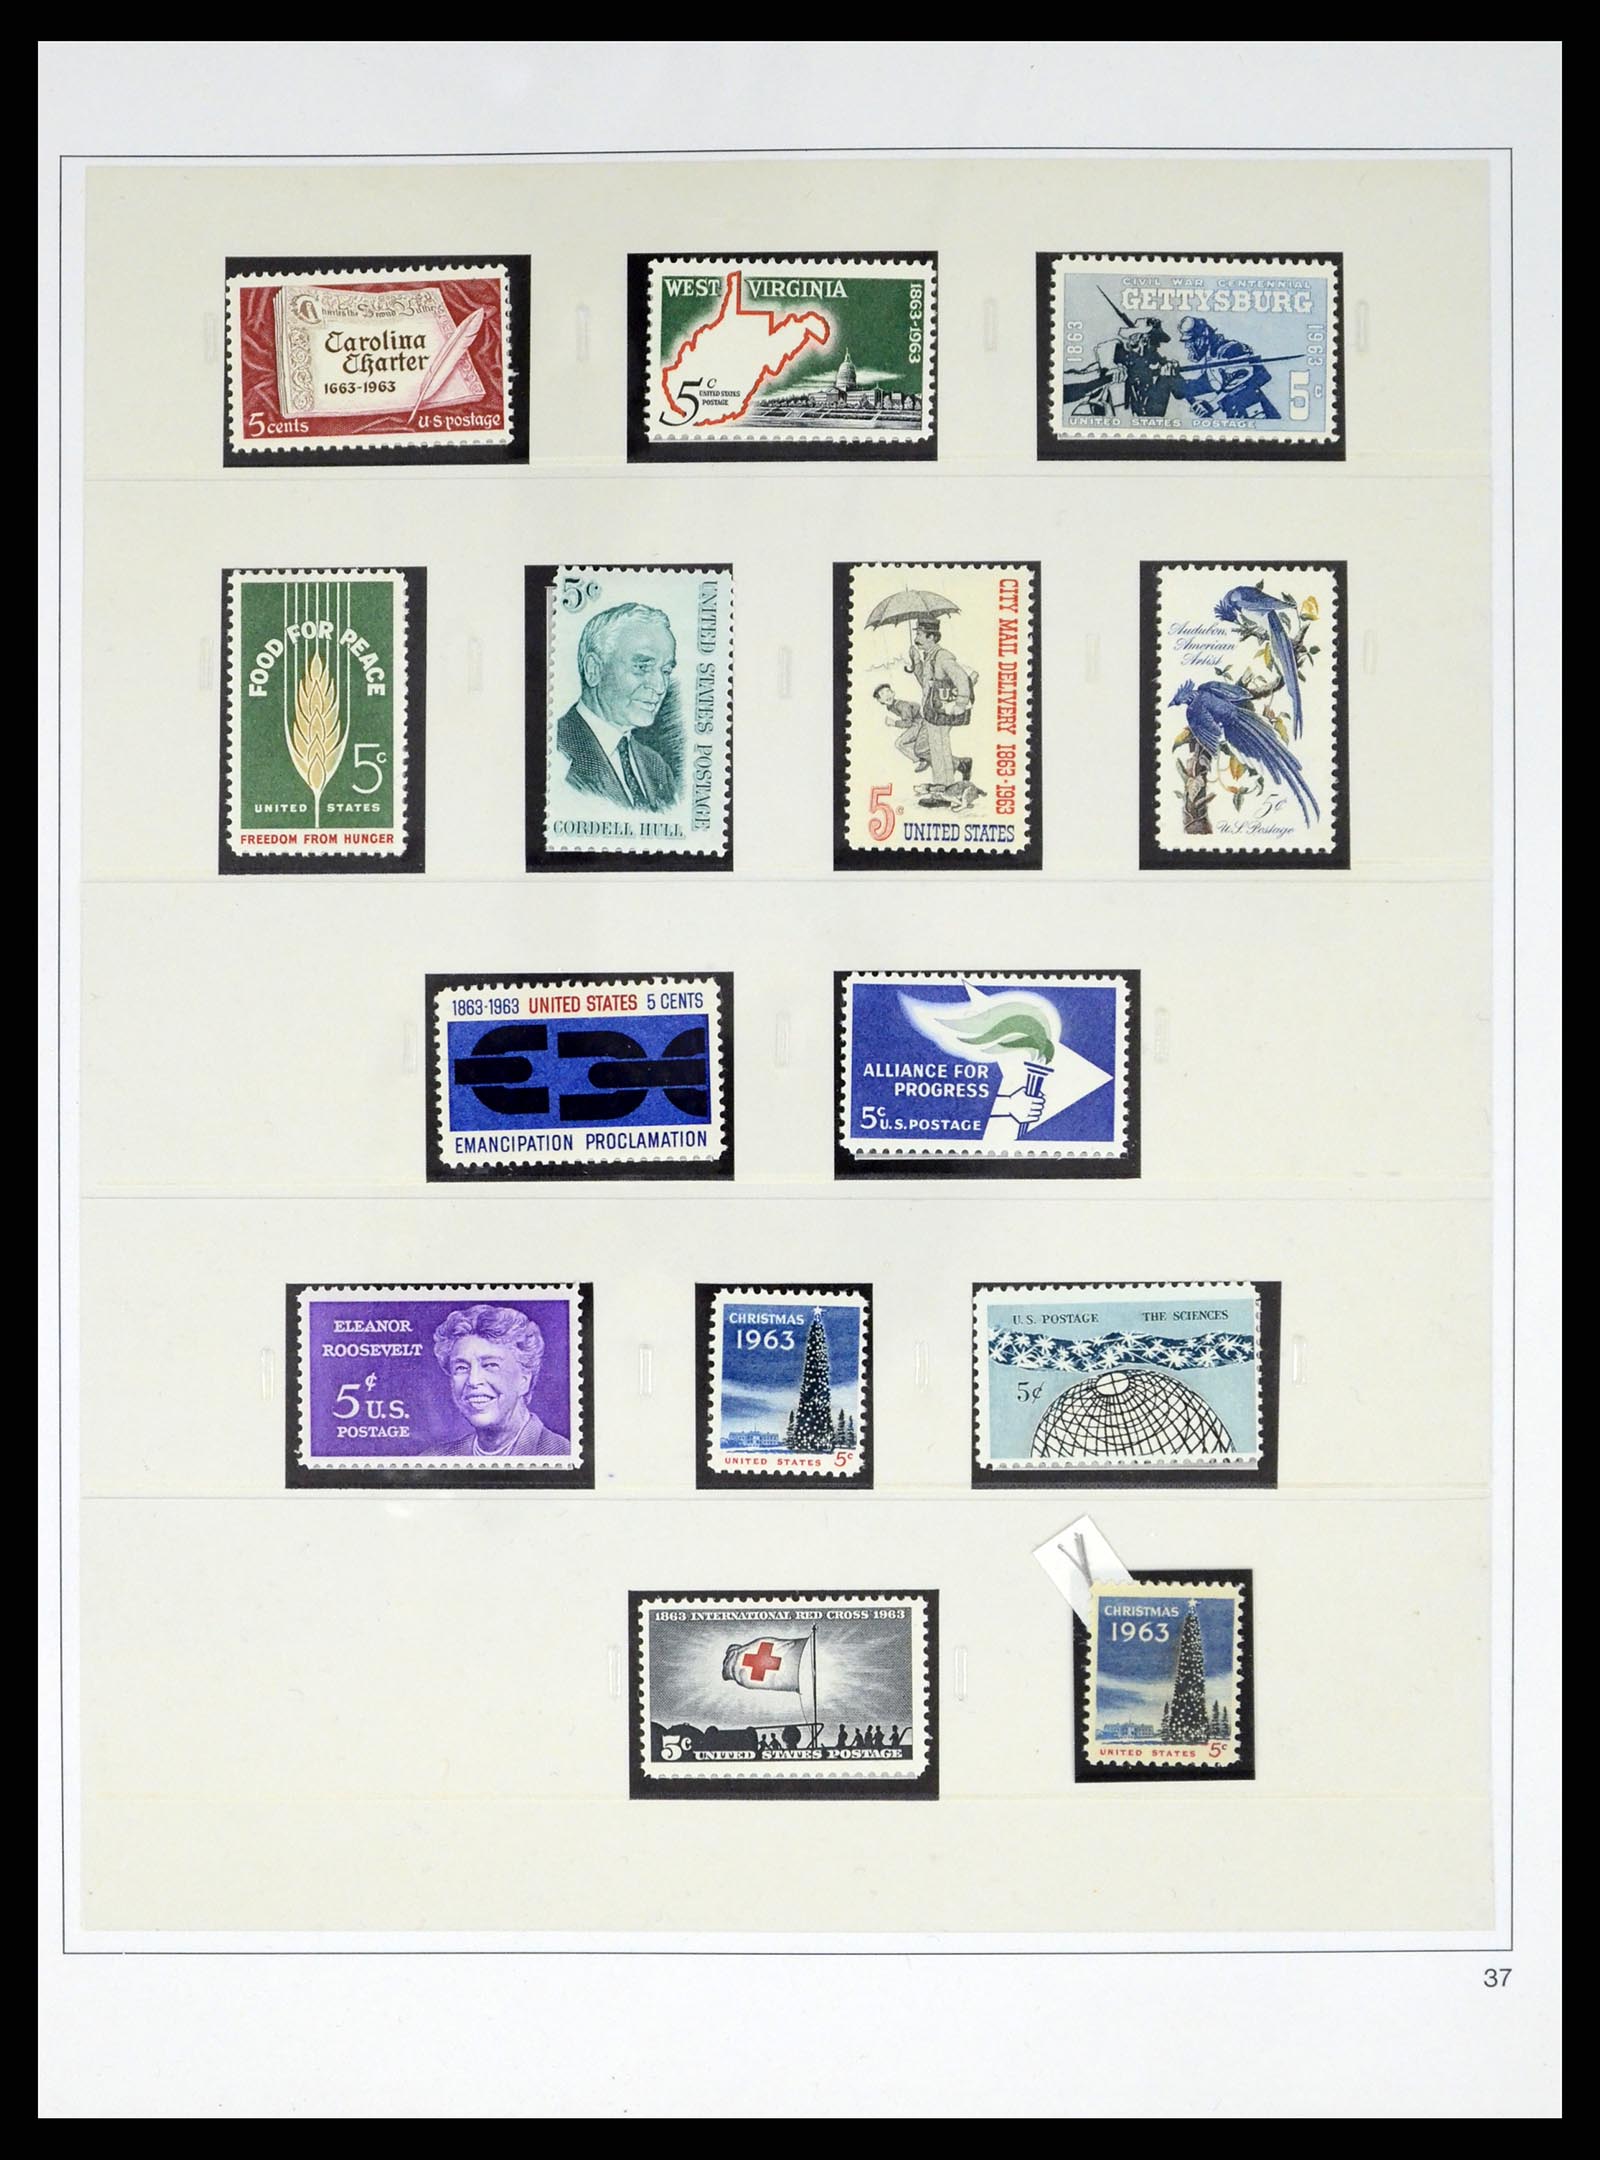 37551 080 - Stamp collection 37551 USA 1851-2001.